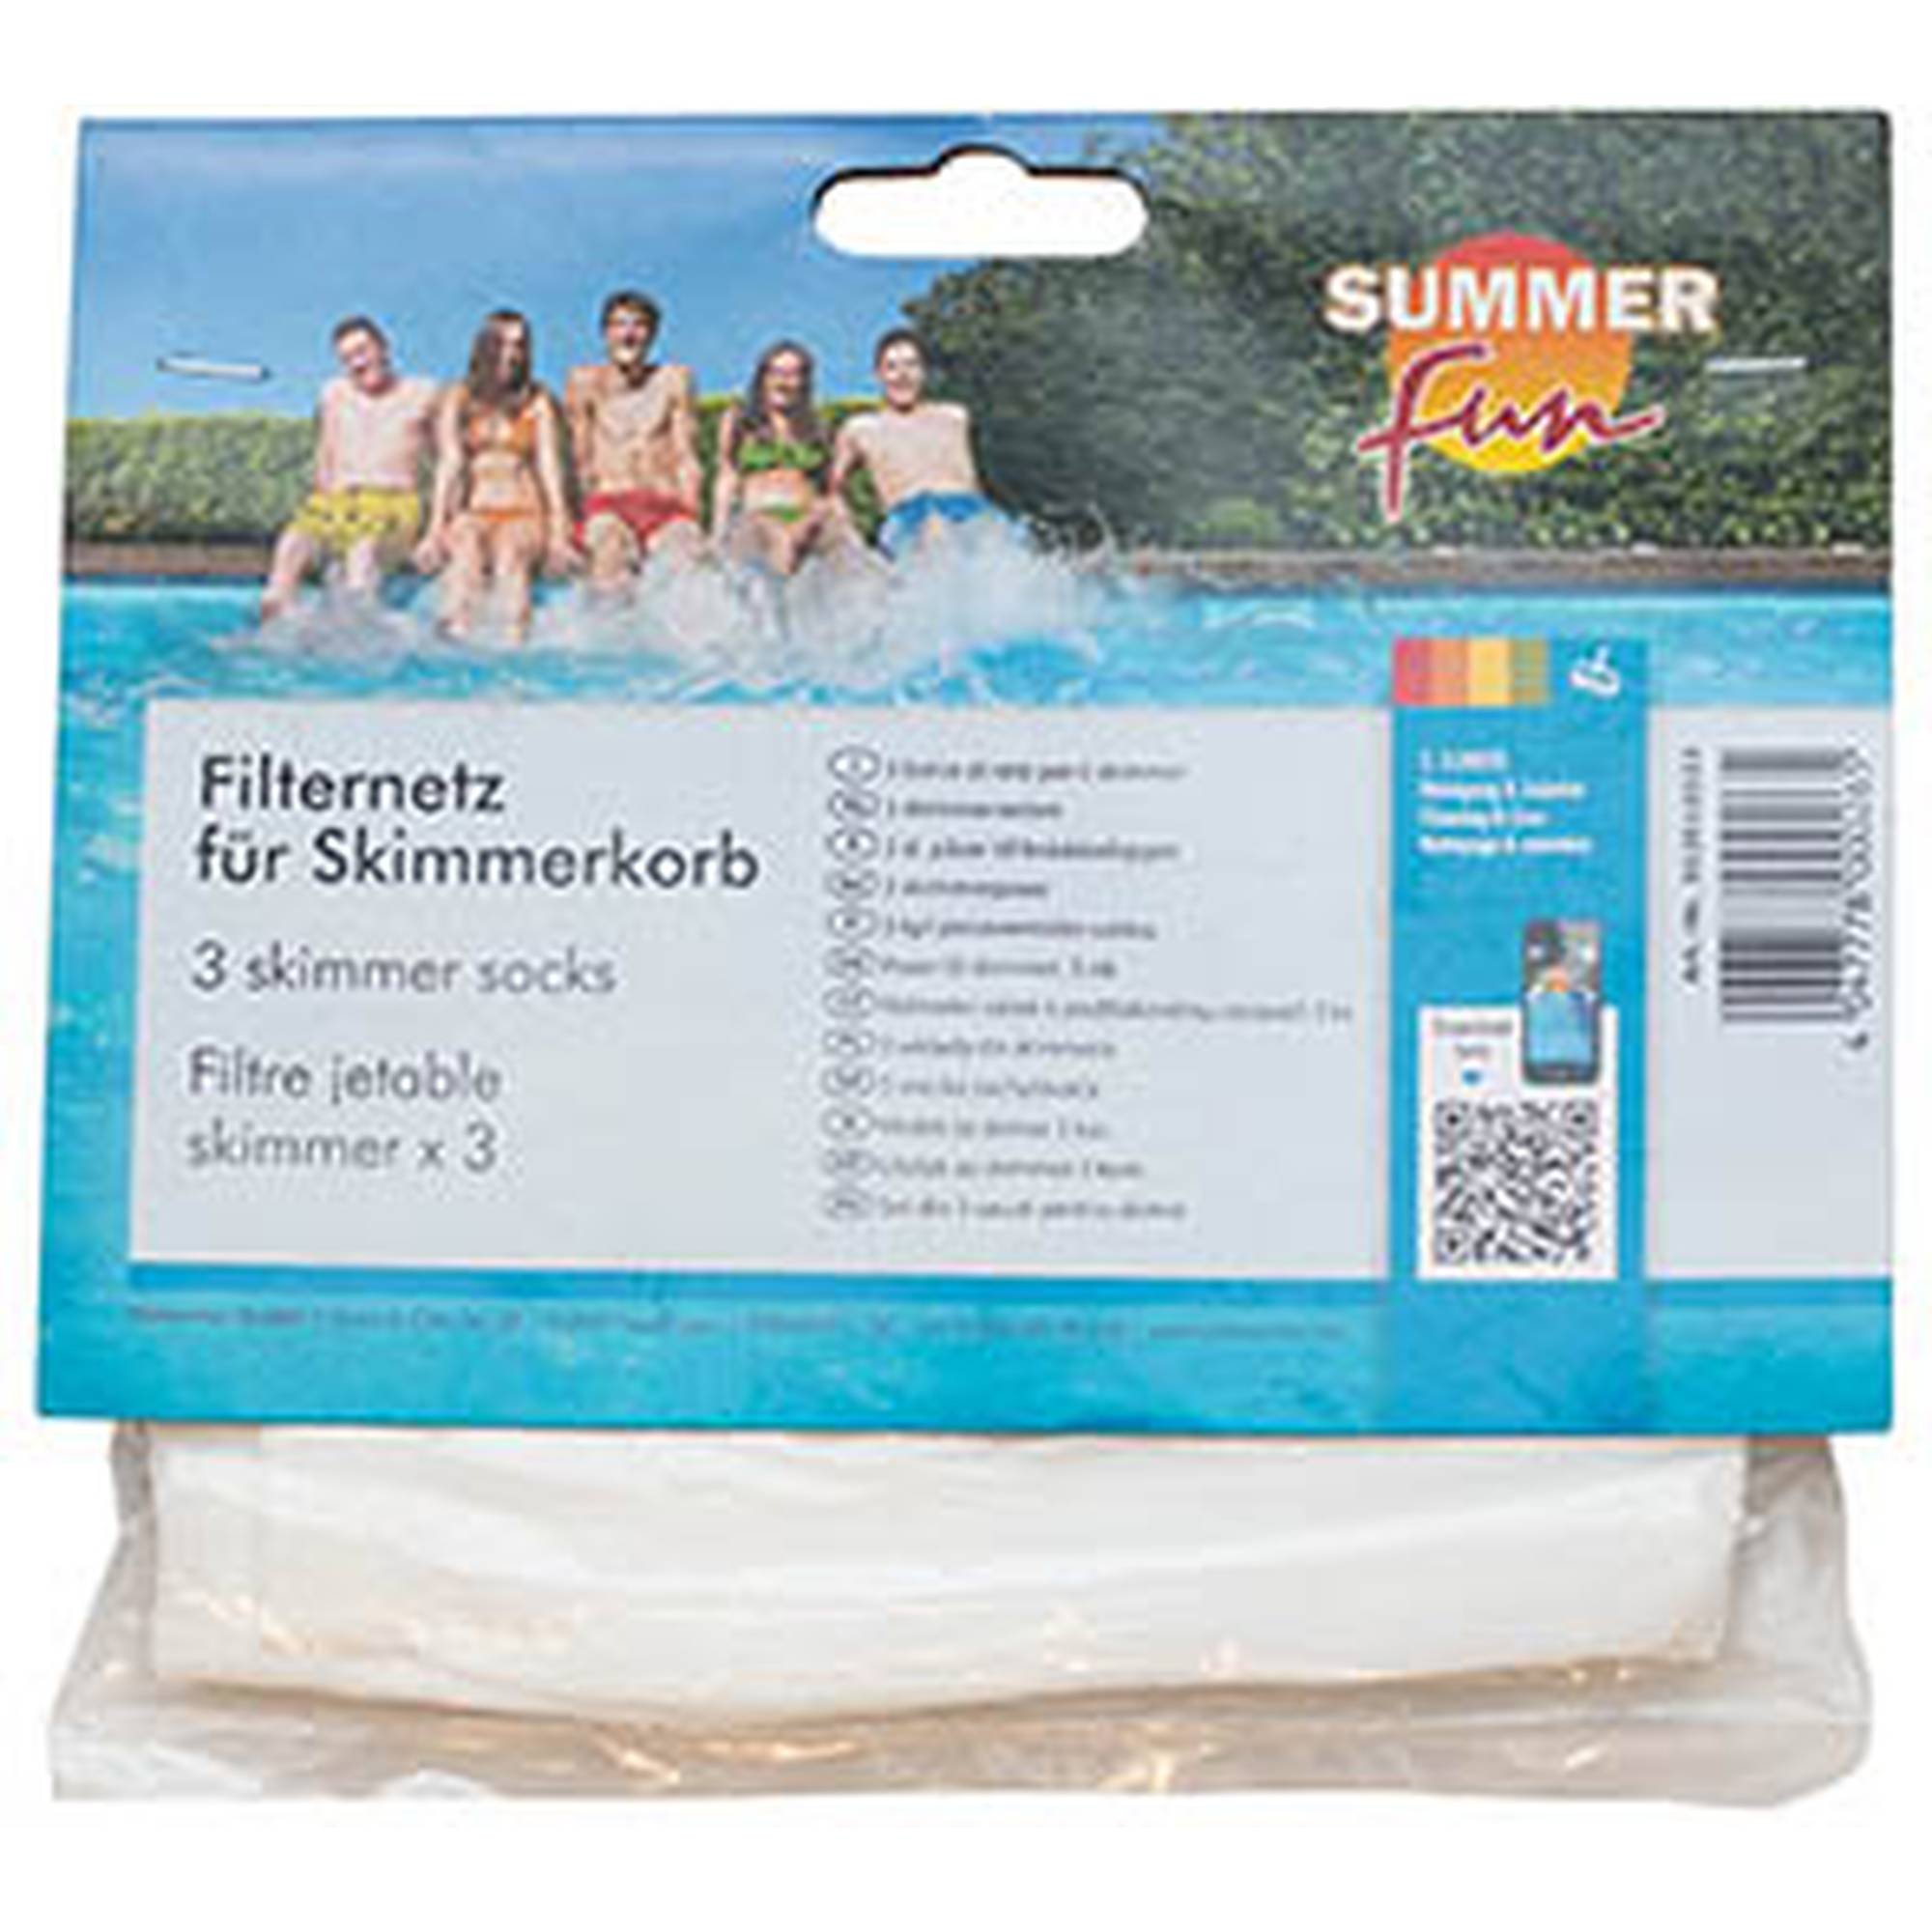 Filternetz für Skimmerkorb 3er Pack